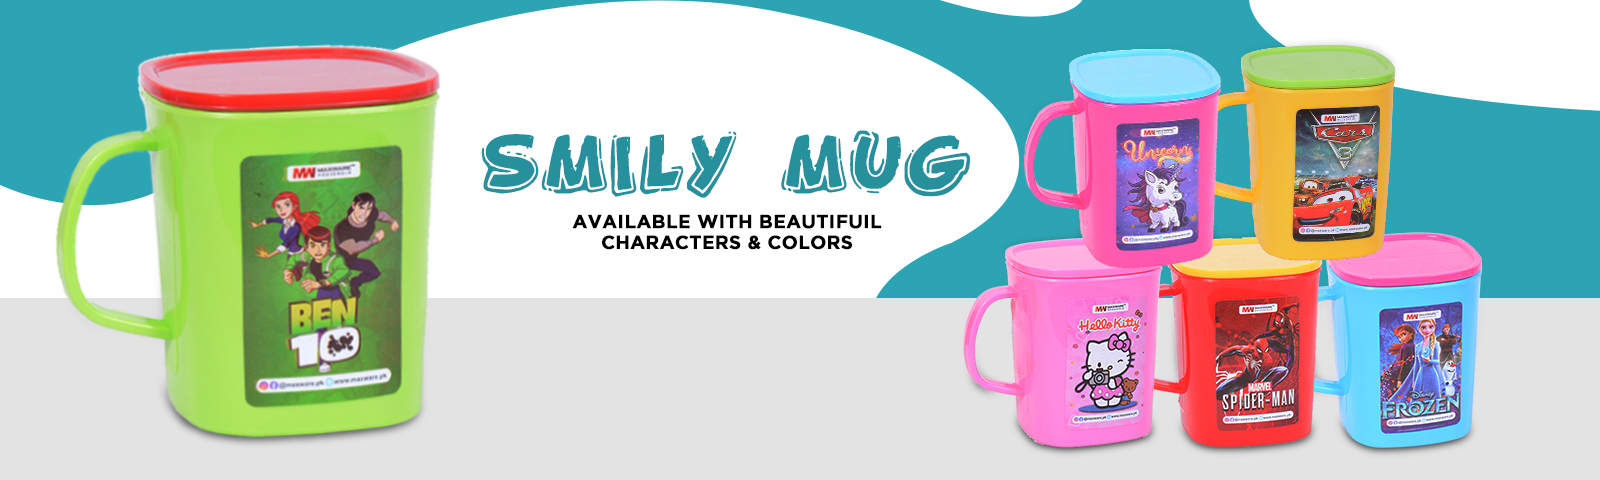 maxware household - smiley mug